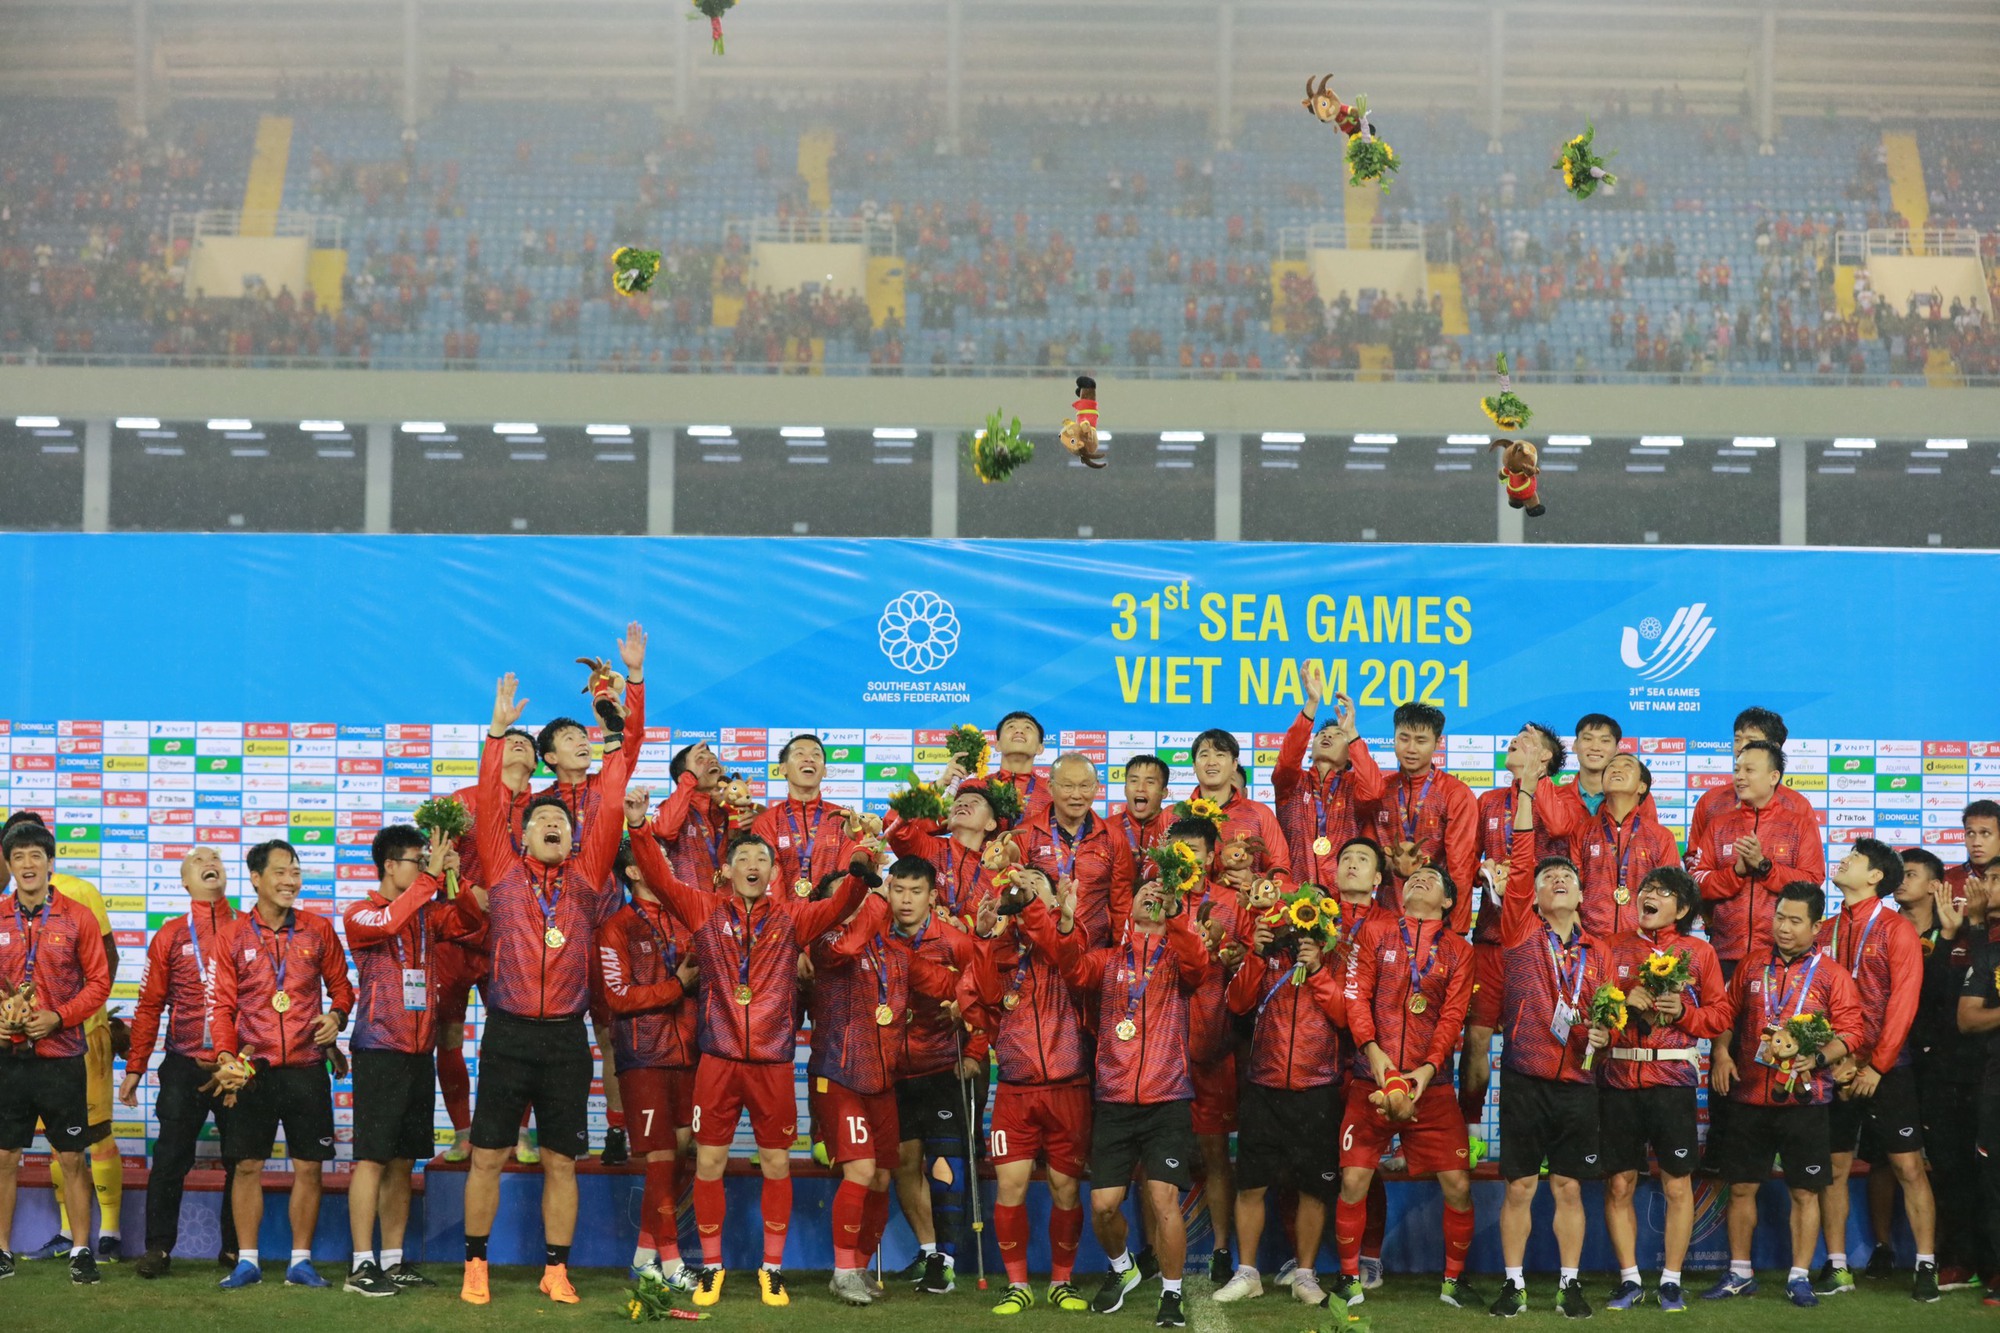 Đội tuyển bóng đá nam U23 Việt Nam: Nỗi tự hào của Việt Nam - đội tuyển bóng đá nam U23 Việt Nam! Họ đã gặt hái được rất nhiều thành công trên đấu trường quốc tế và những hình ảnh của họ đã in đậm trong tâm trí mỗi người hâm mộ. Hãy cùng chúng tôi đón xem những khoảnh khắc đáng nhớ của đội tuyển U